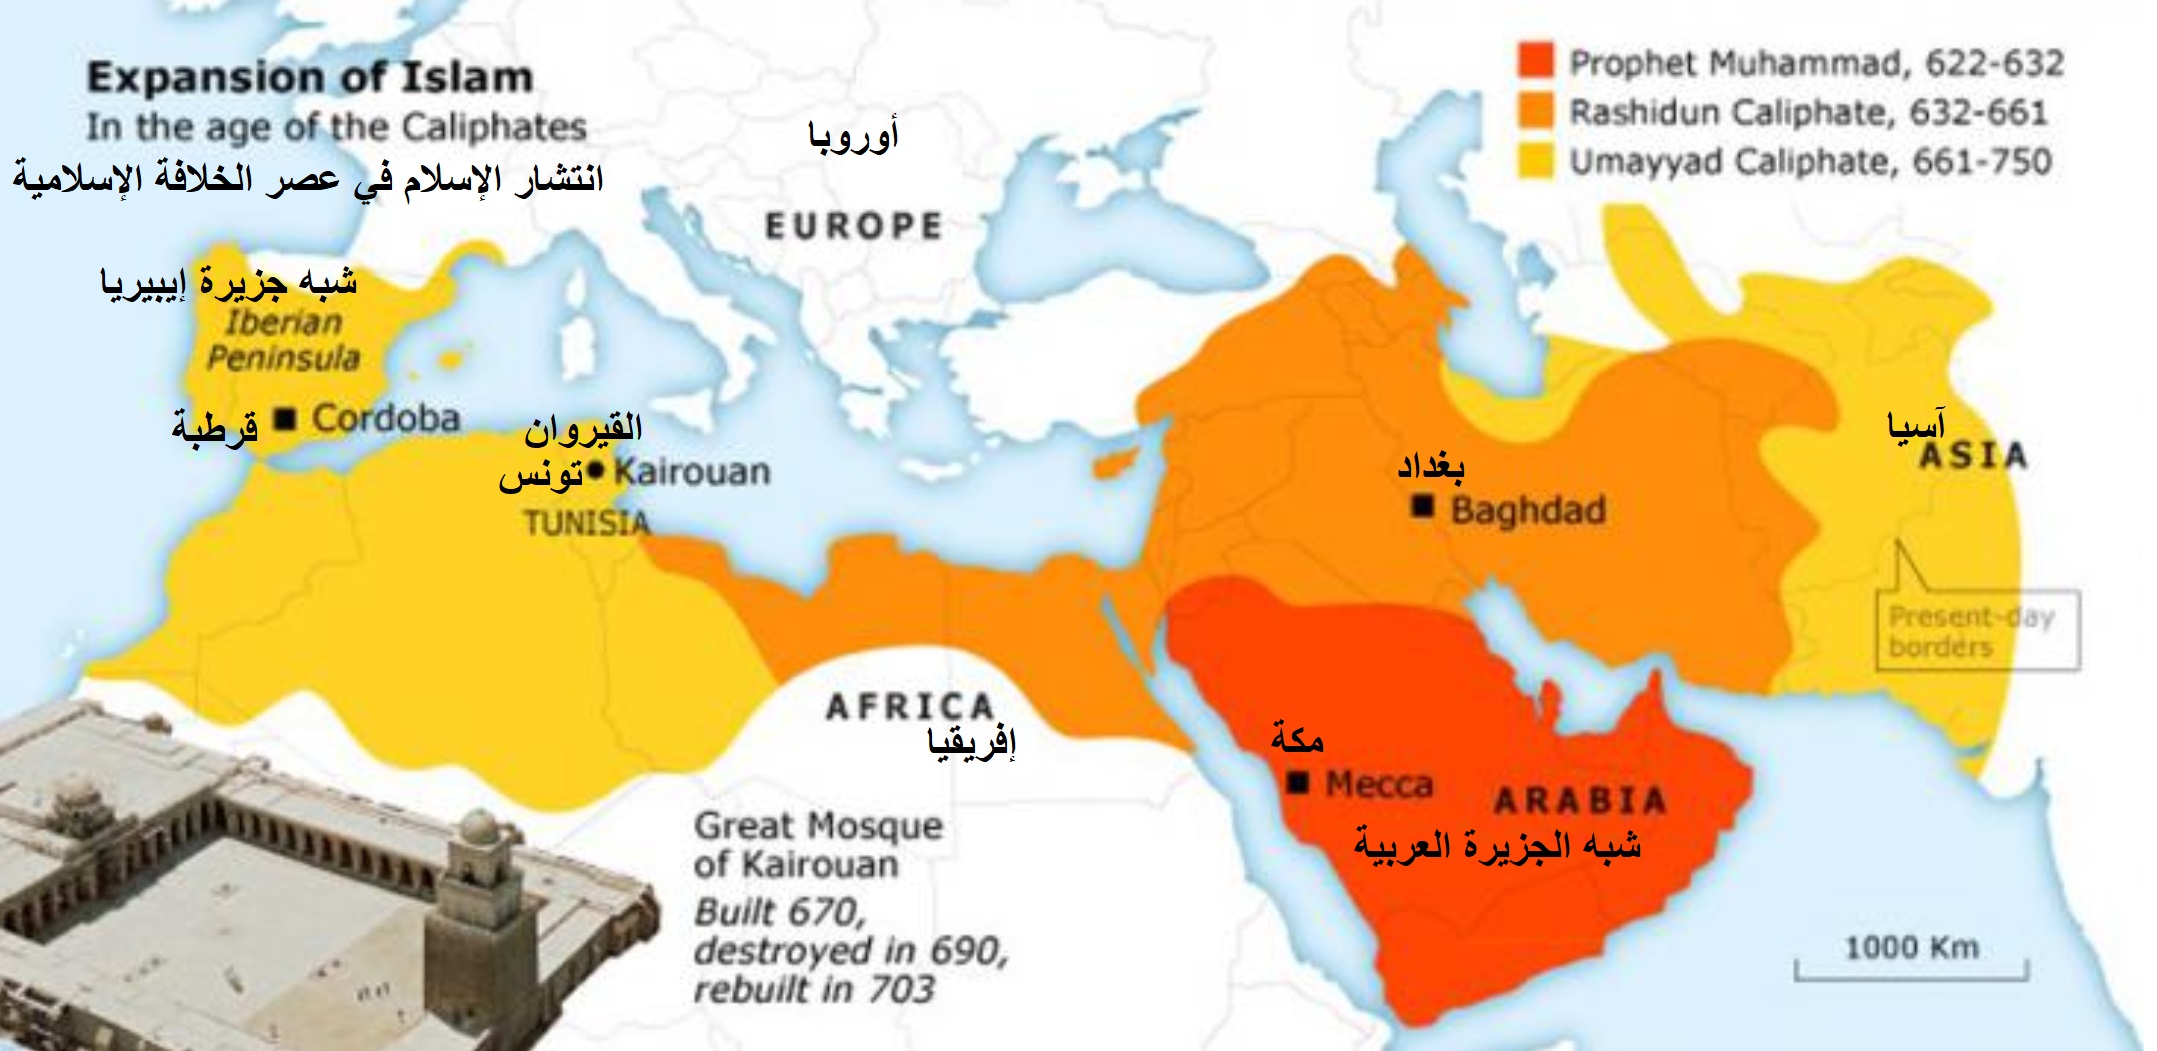 خريطة: انتشار الإسلام في عصر الخلافة الإسلامية. source: fanack.com